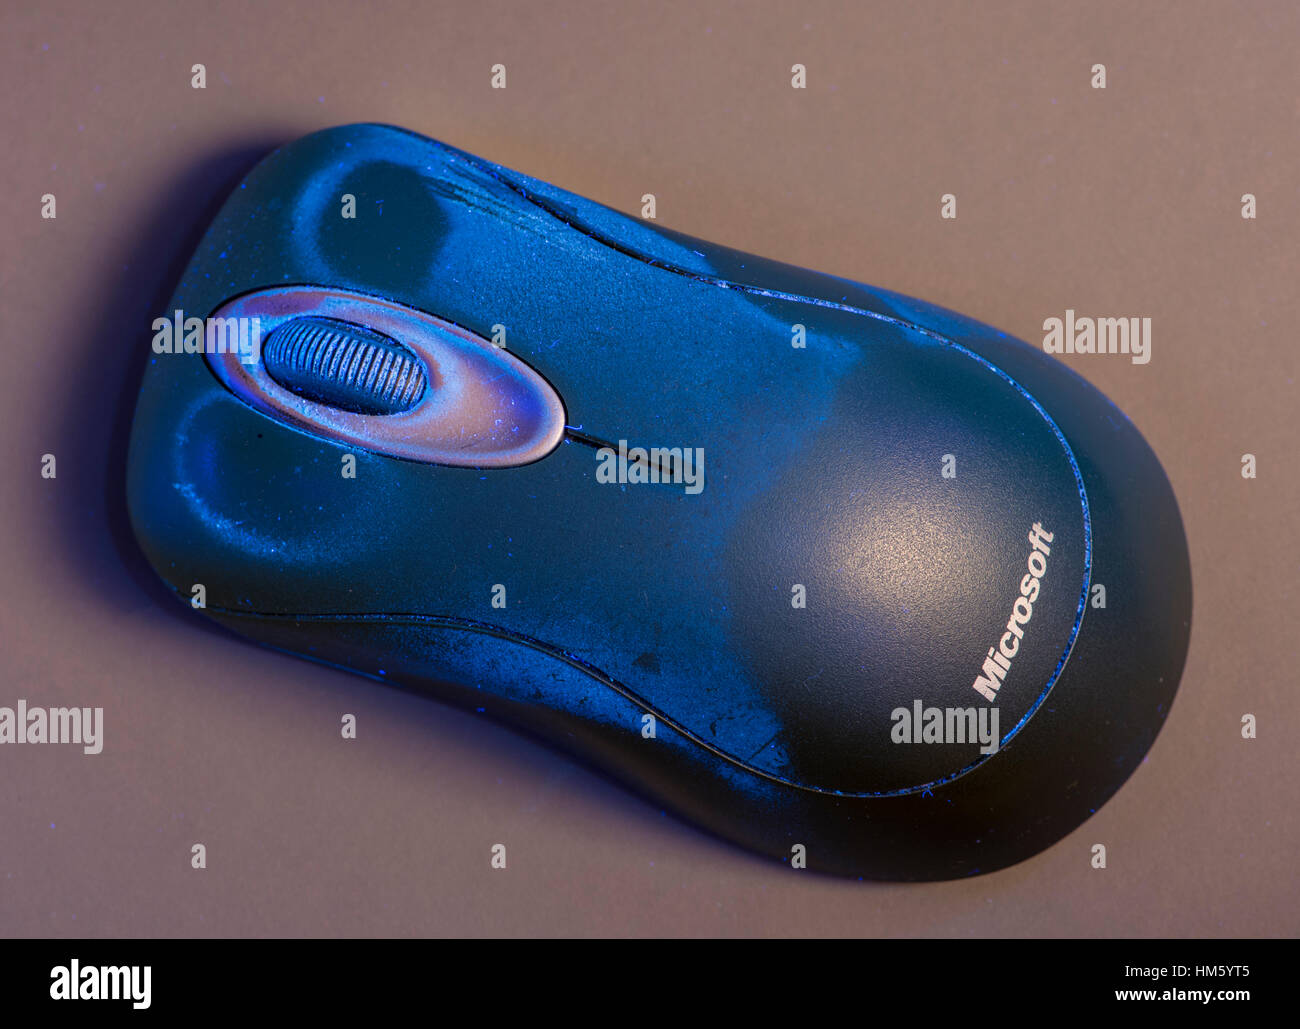 Computer-Maus, fluoreszieren unter UV-Licht, Schmutz auf der Oberfläche zeigen Stockfoto